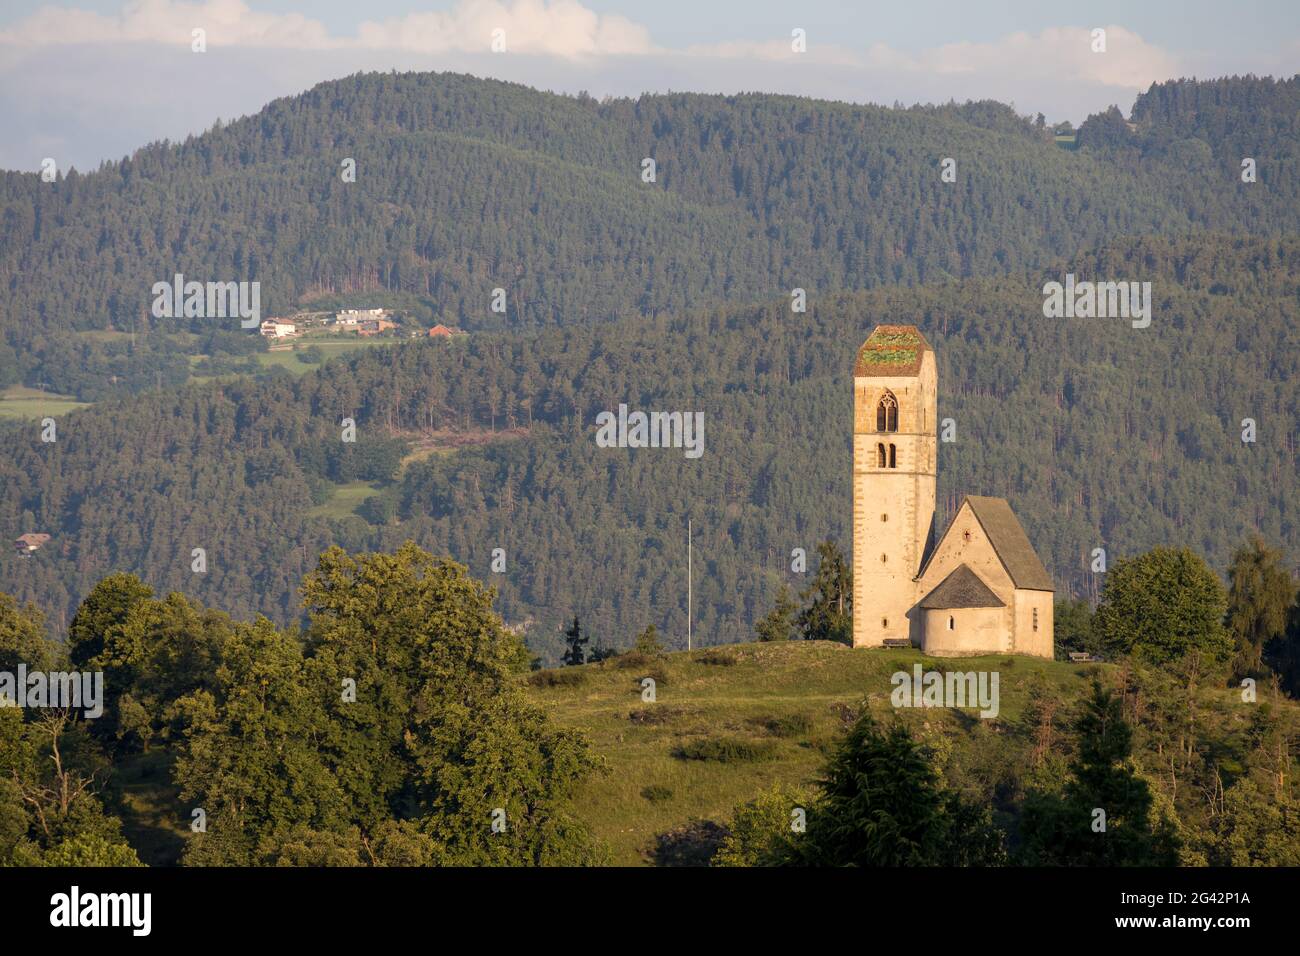 FIE ALLO SCILIAR, SOUTH TYROL/ITALY - AUGUST 8 : View of San Pietro In Colle church, Fie allo Sciliar Trentino Alto Adigio, Sout Stock Photo